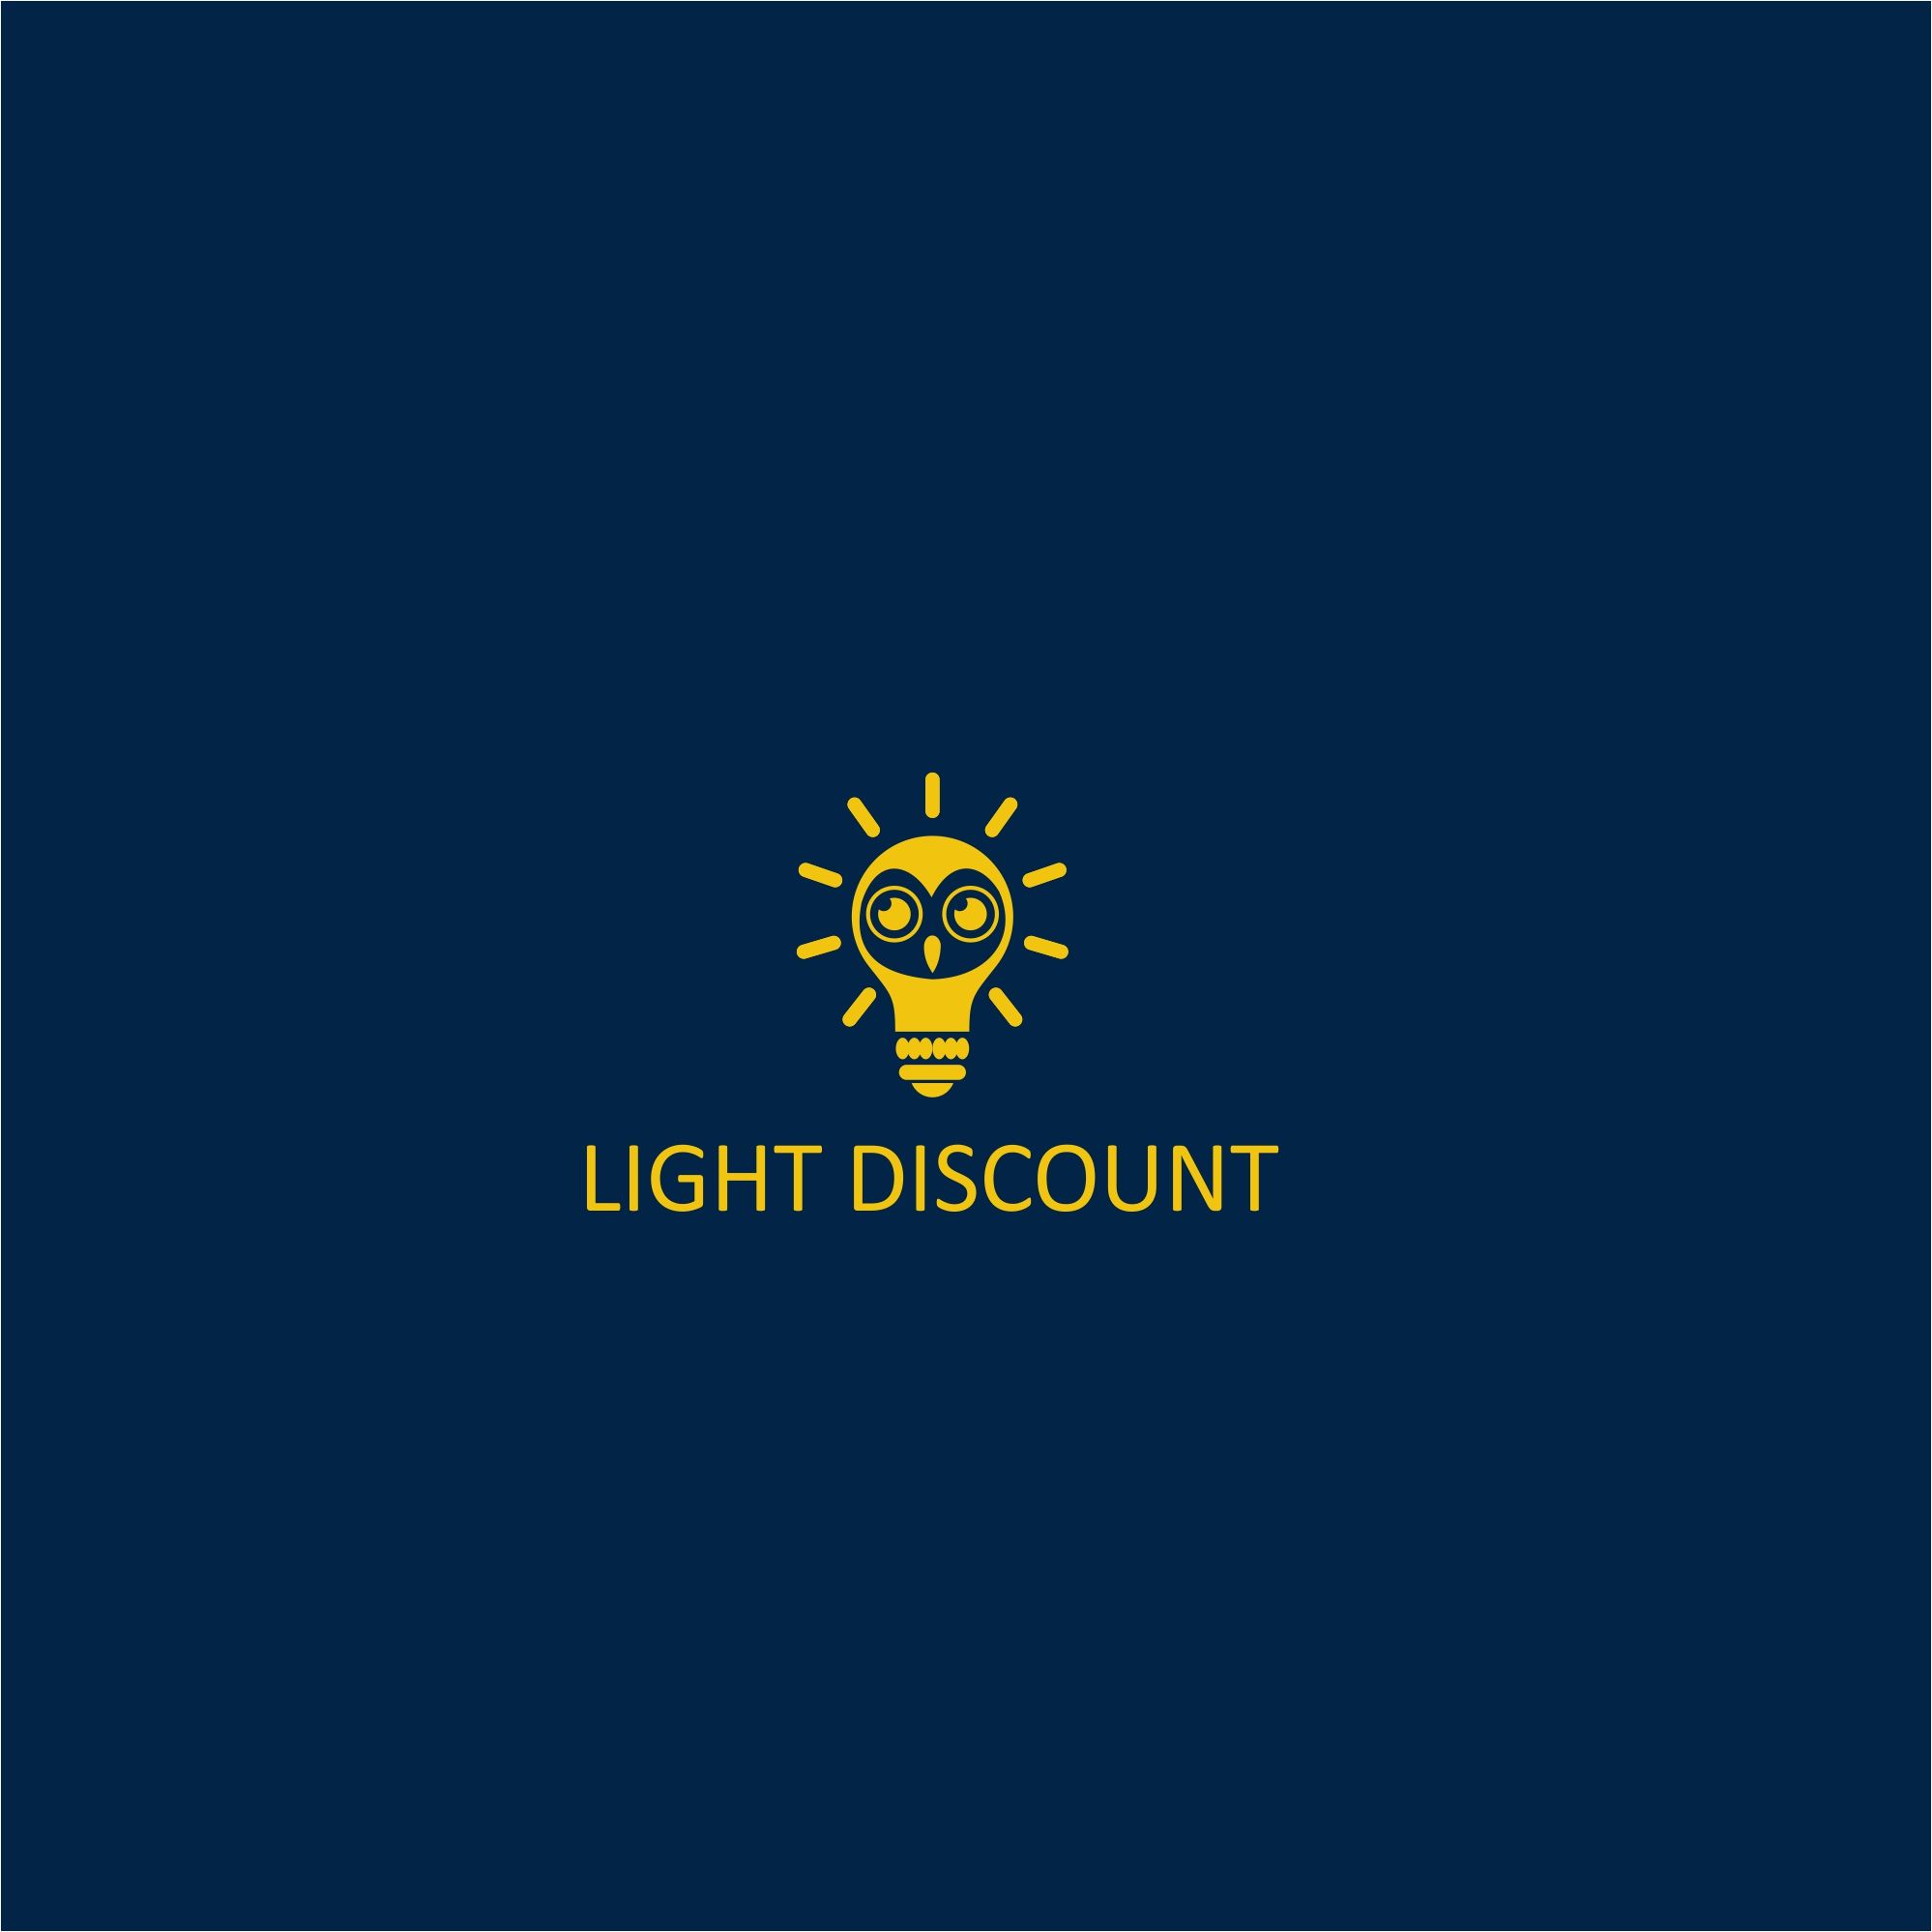 Логотип для light discount - дизайнер serz4868